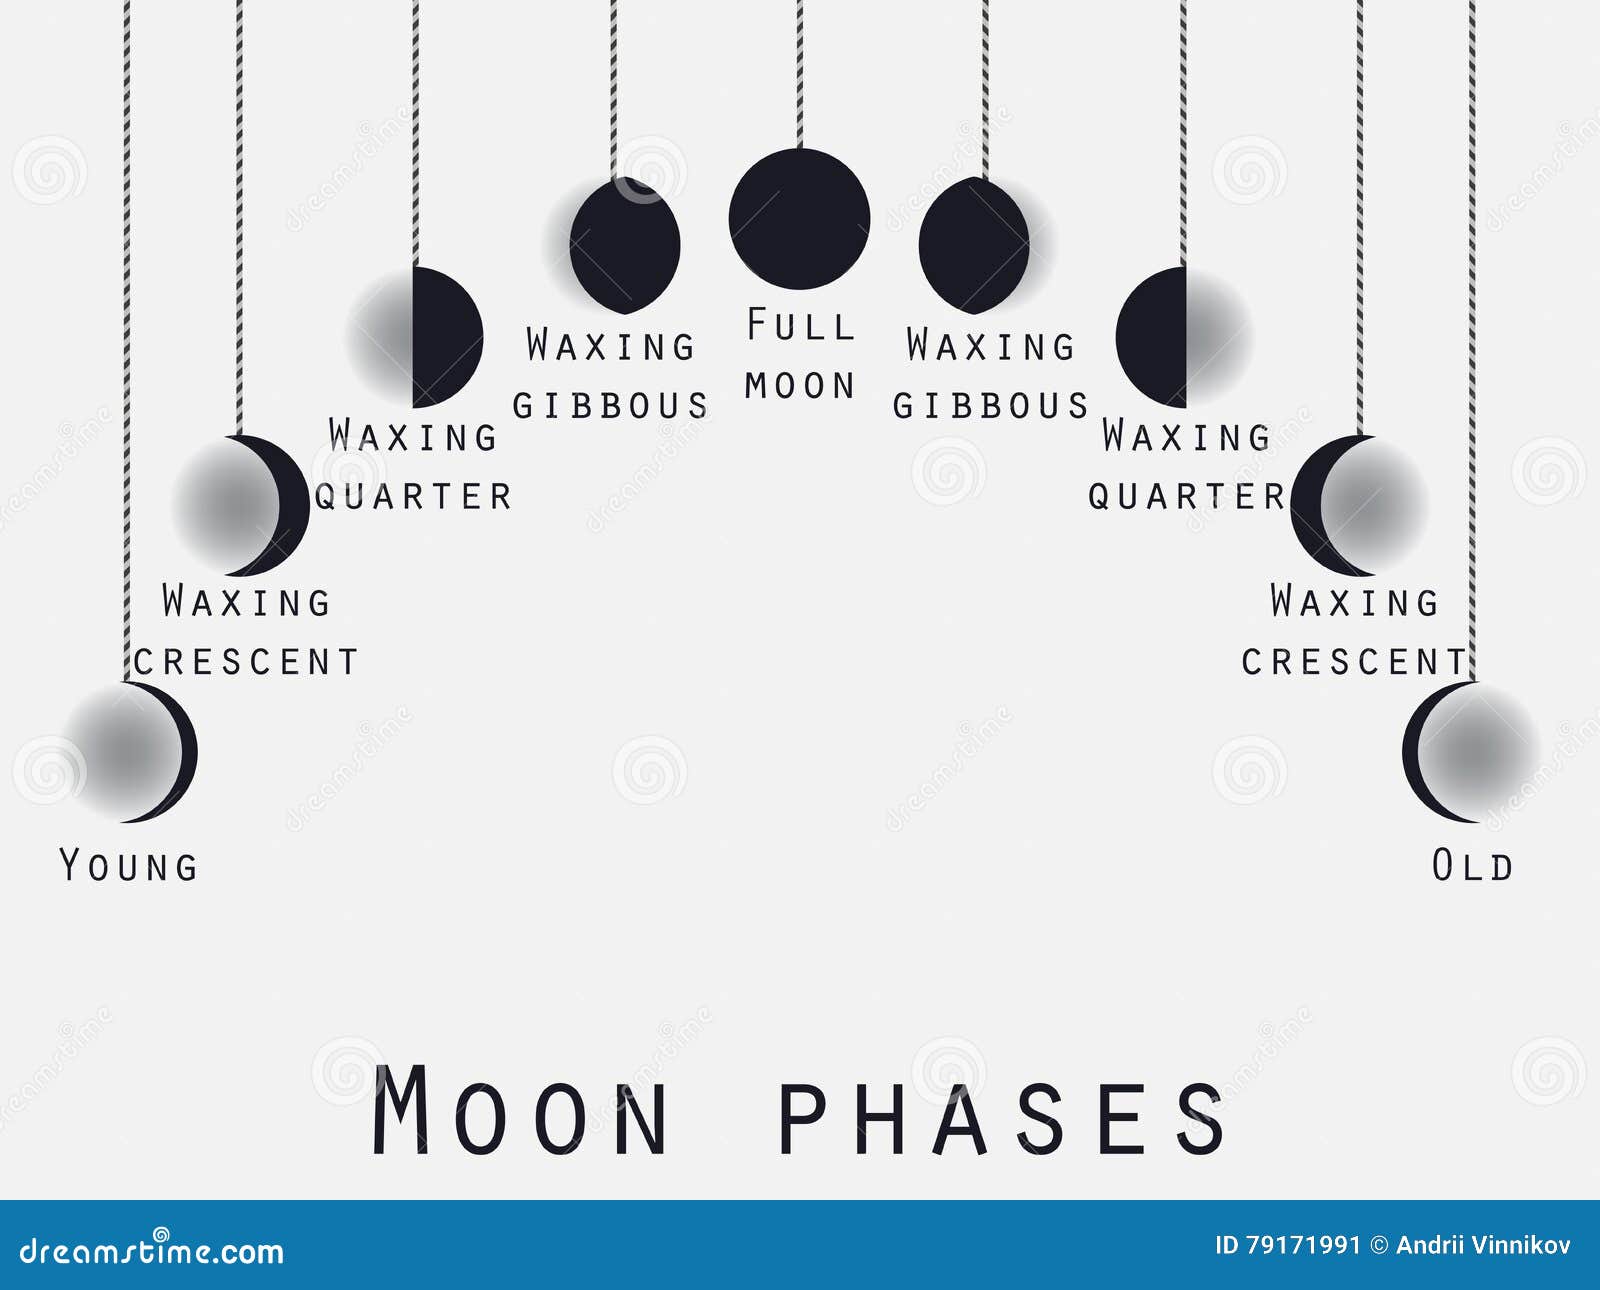 Les Phases De La Lune Phase Lunaire Etapes De Lune Vecteur Illustration De Vecteur Illustration Du Moonlight Eclipse